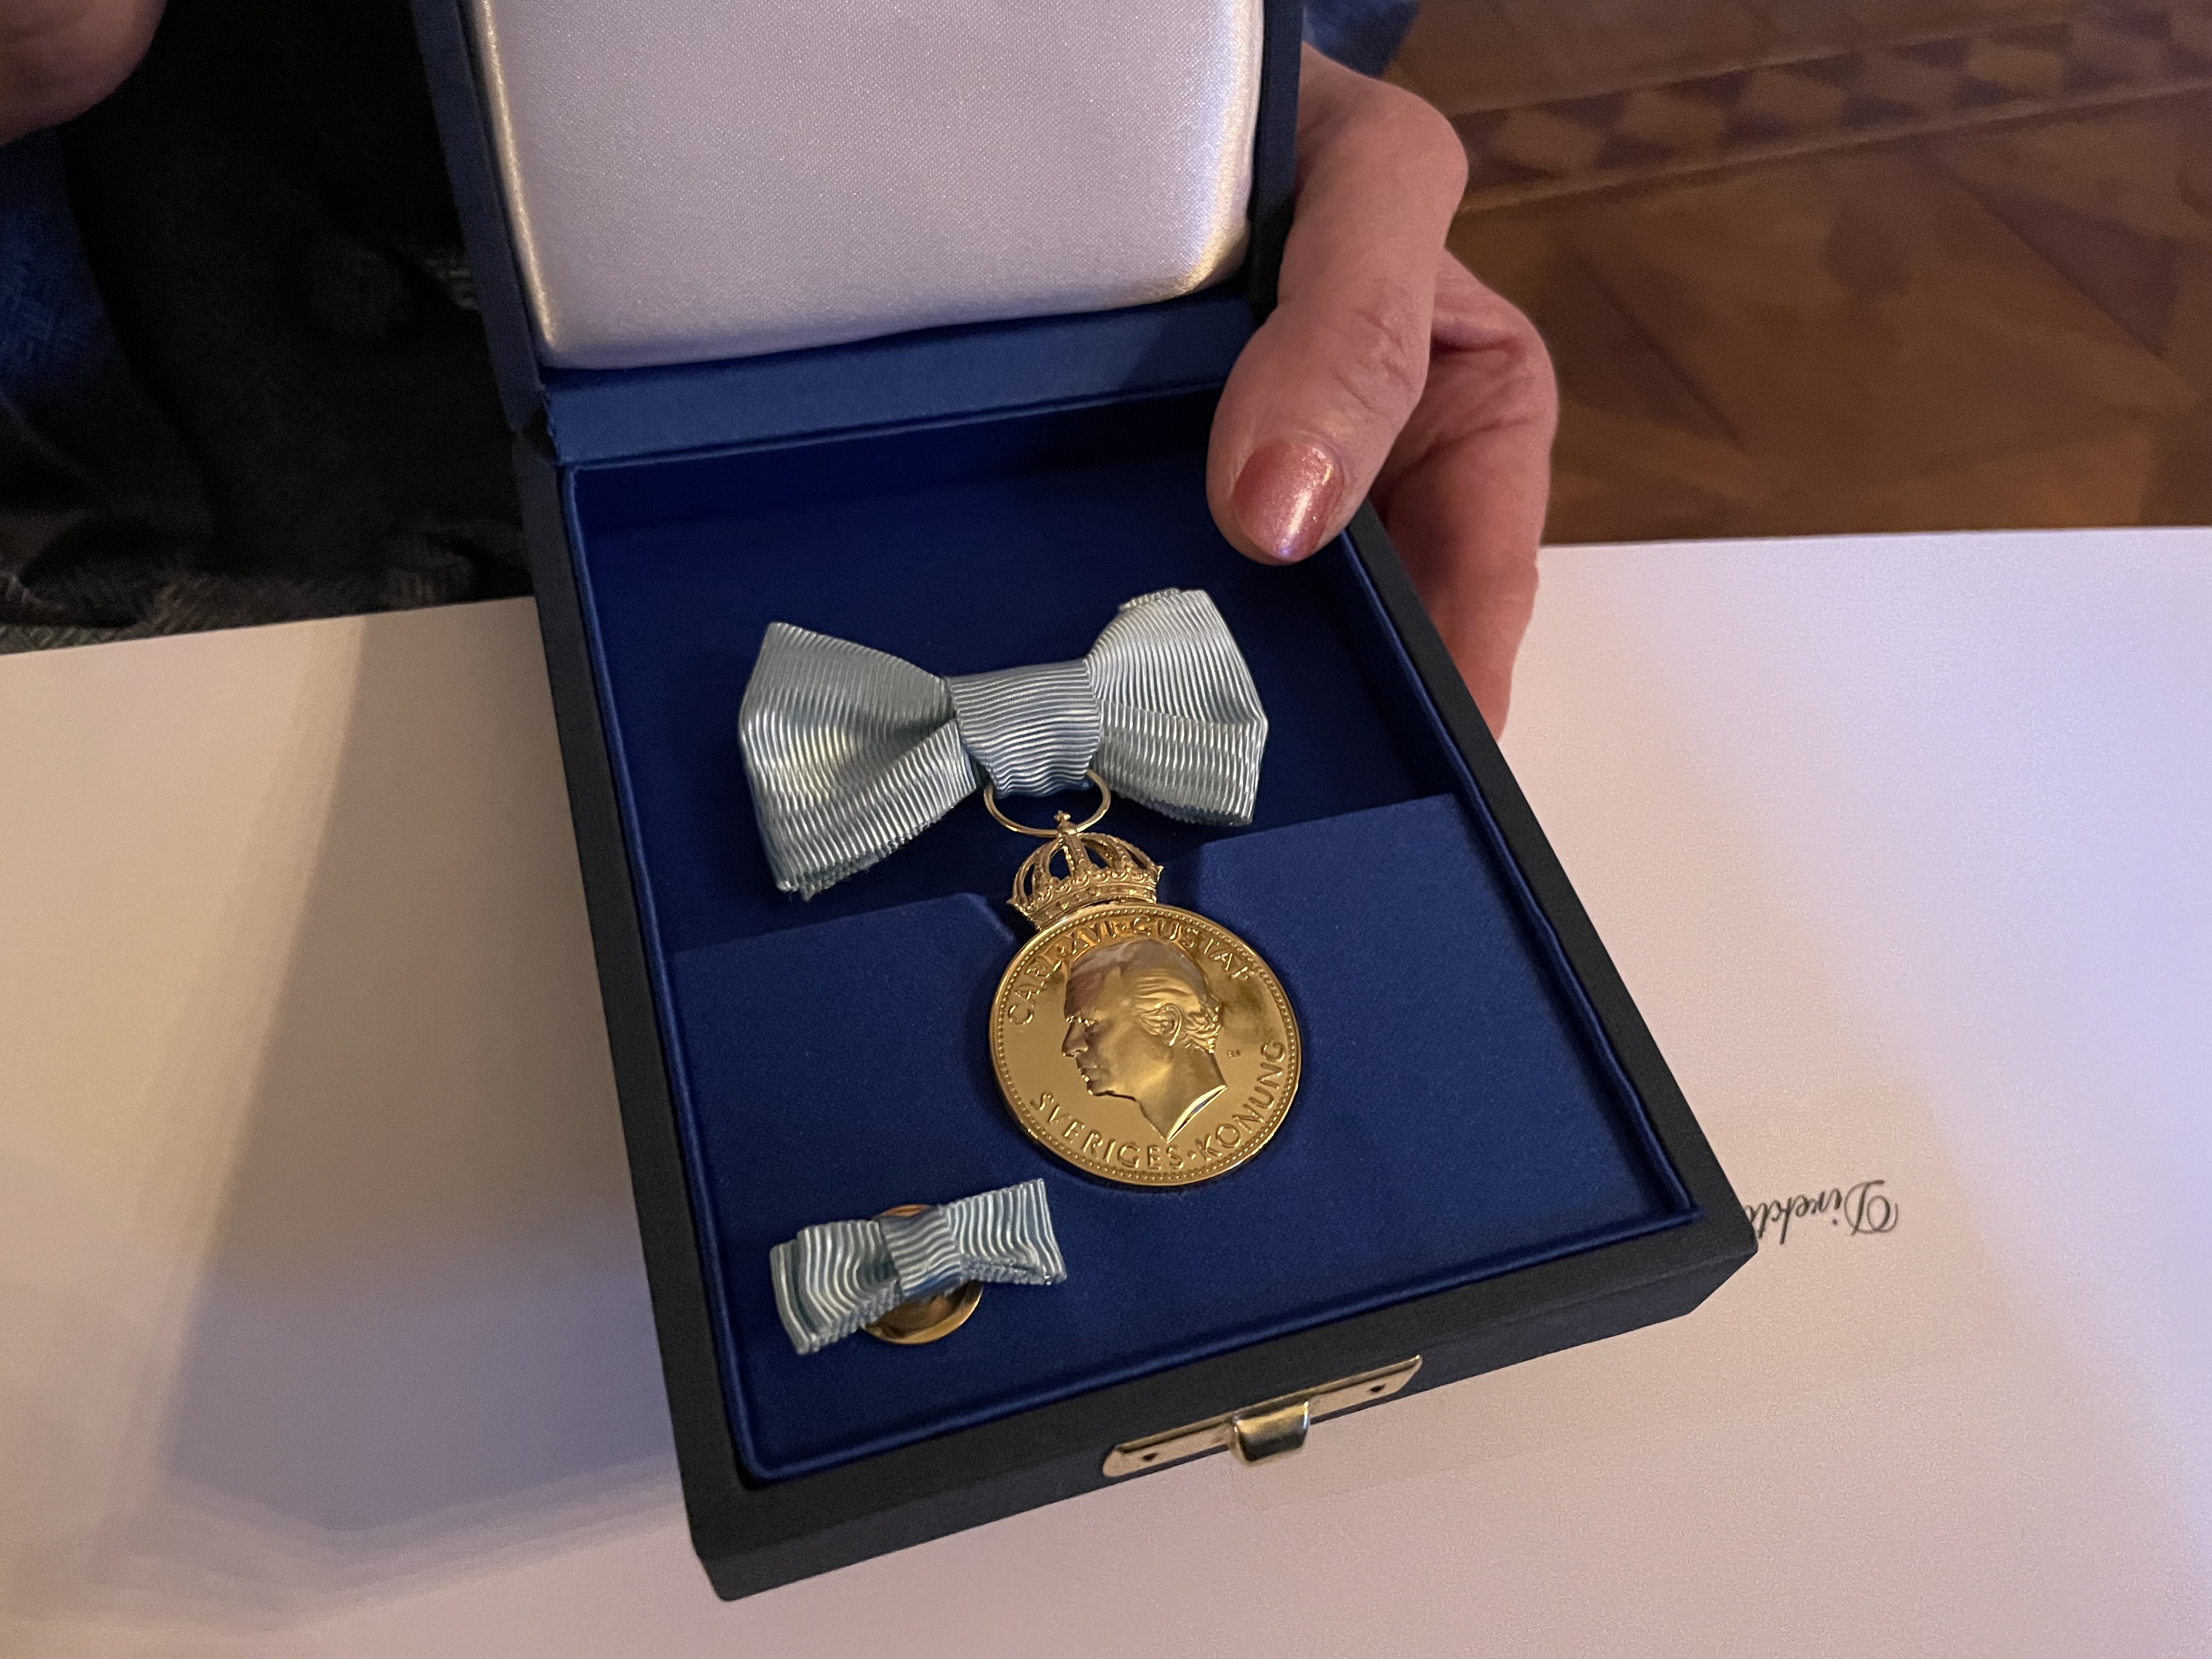 Konungens medalj Marianne Ränk _ Einar mattsson.jpg